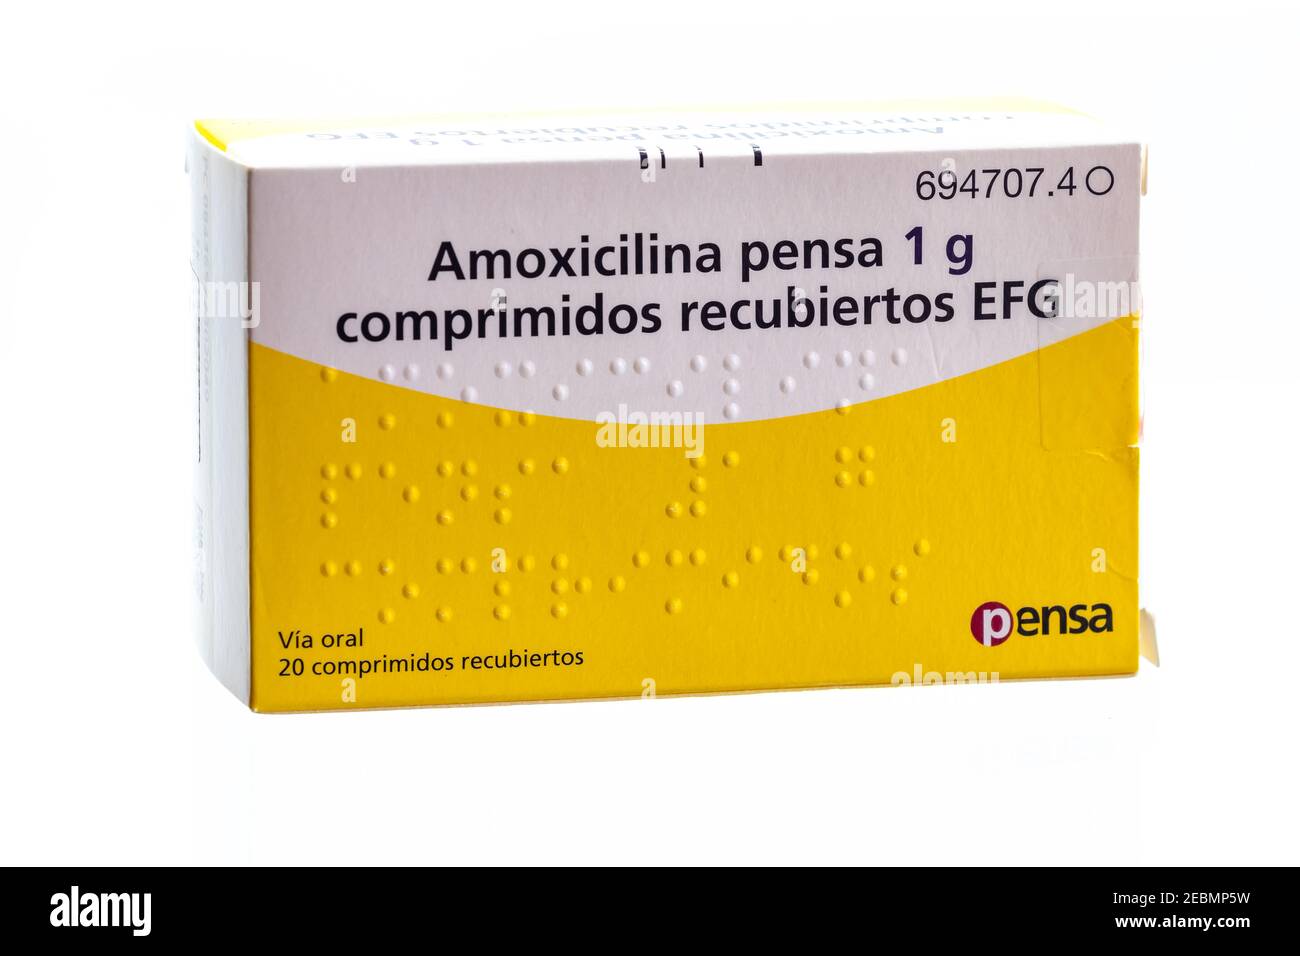 falta de aliento Luna tambor Huelva, España-Febrero 12,2021: Caja Española de Amoxicilina 1g ( 1000mg )  del Laboratorio Pensa. Es un antibiótico semisintético derivado del  penicilo Fotografía de stock - Alamy